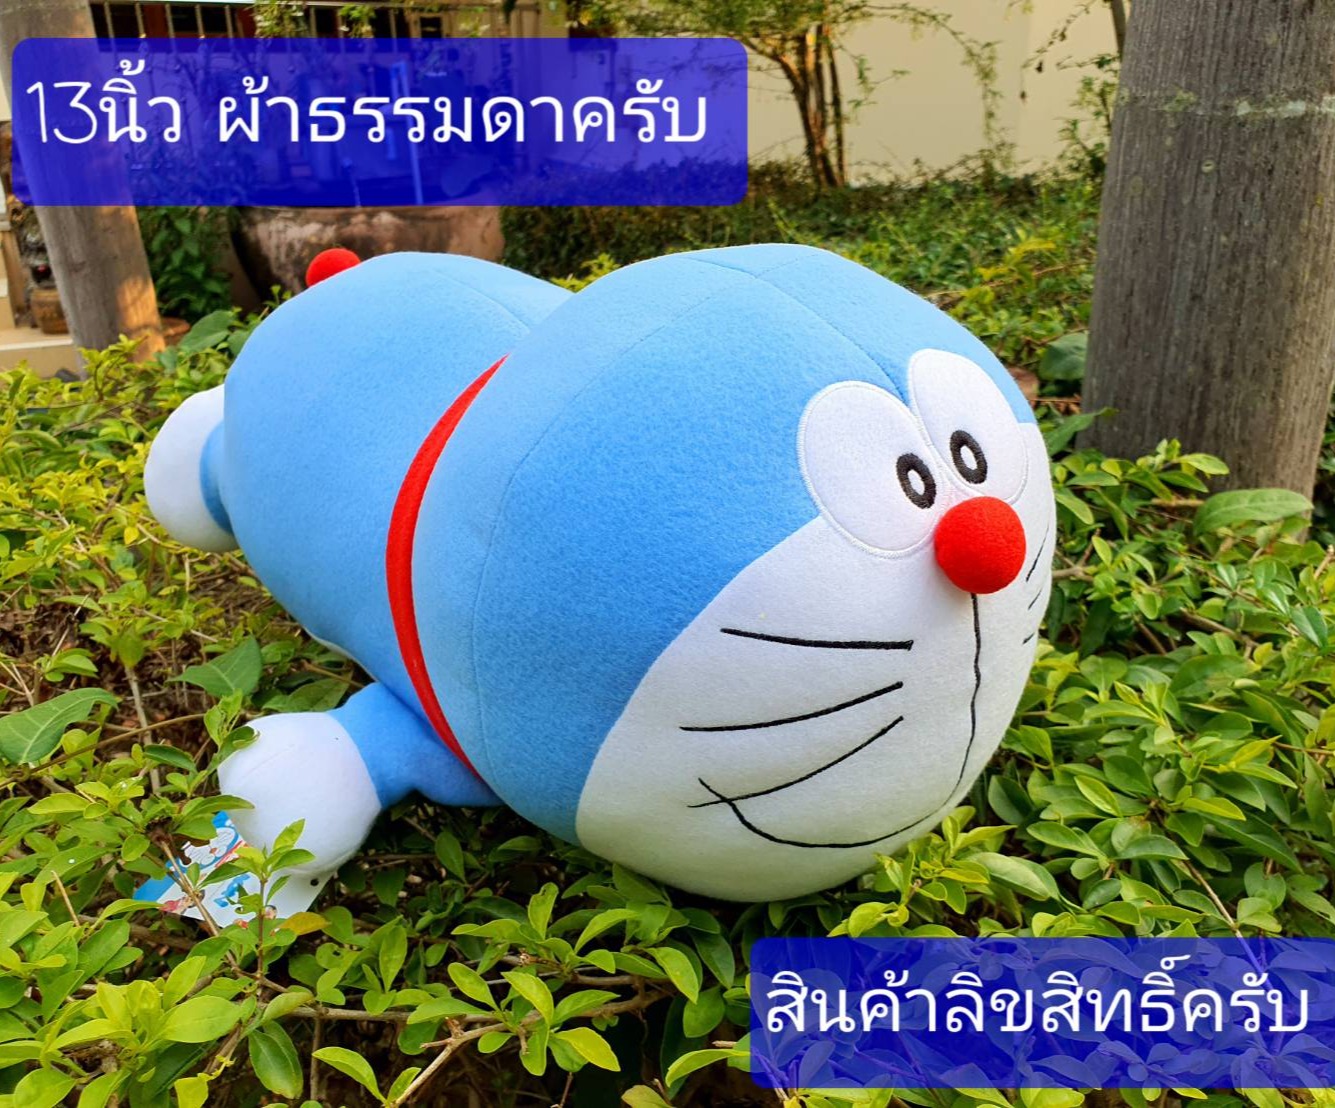 13นิ้วนอนหมอบ(159บ.)   กับ 16นิ้ว ยืน (149บ.)  Doraemon   โดราเอม่อน   ตุ๊กตาโดราเอม่อน   โดราเอม่อนแท้    โดราเอม่อน   โดเรม่อน   Doraemon   ตุ๊กตาโดราเอมอน